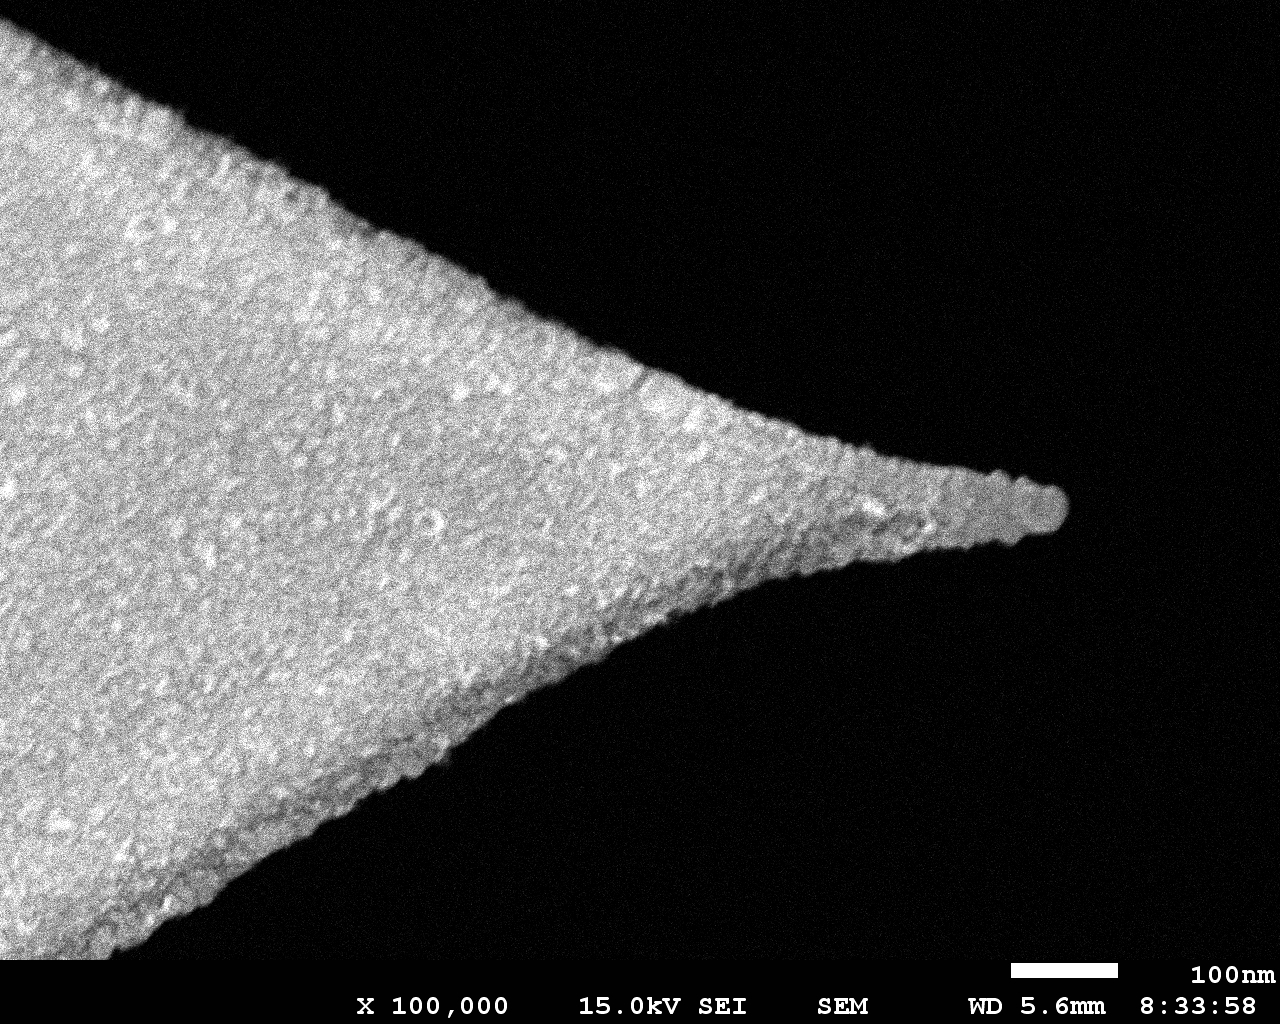 SEM image of platinum silicide (PtSi) AFM tip